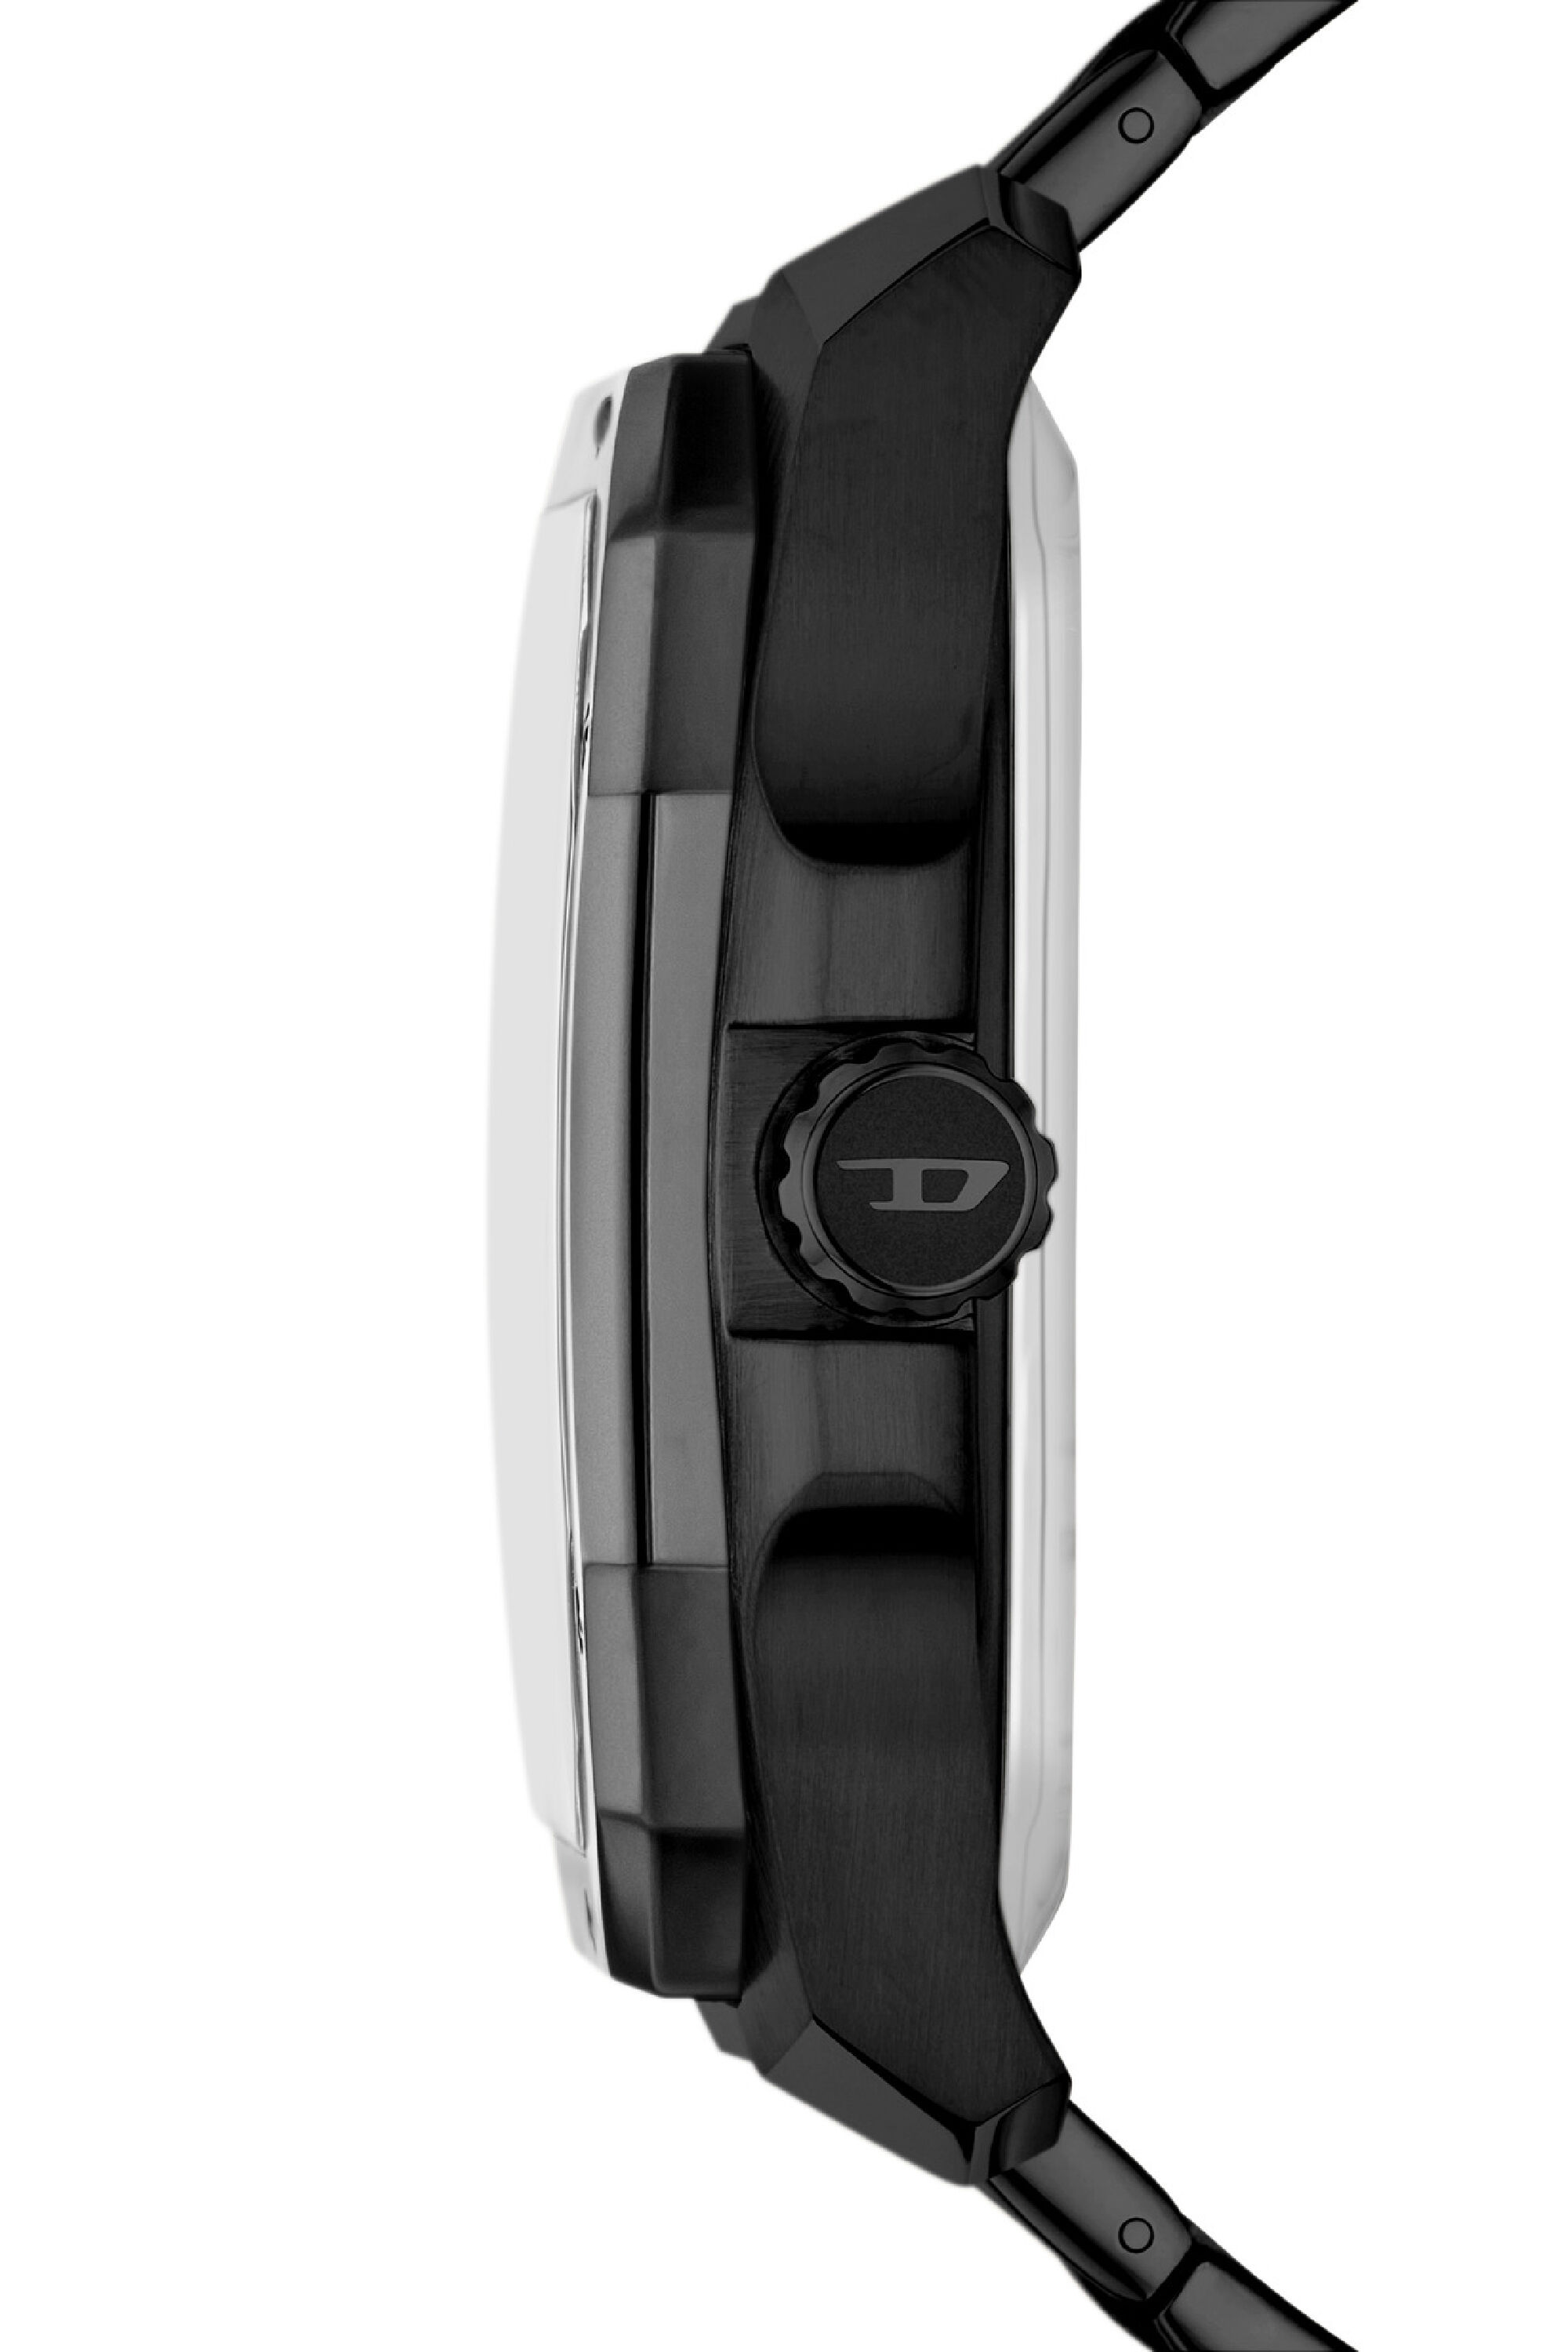 Men's Flayed stainless steel watch | DZ7472 Diesel